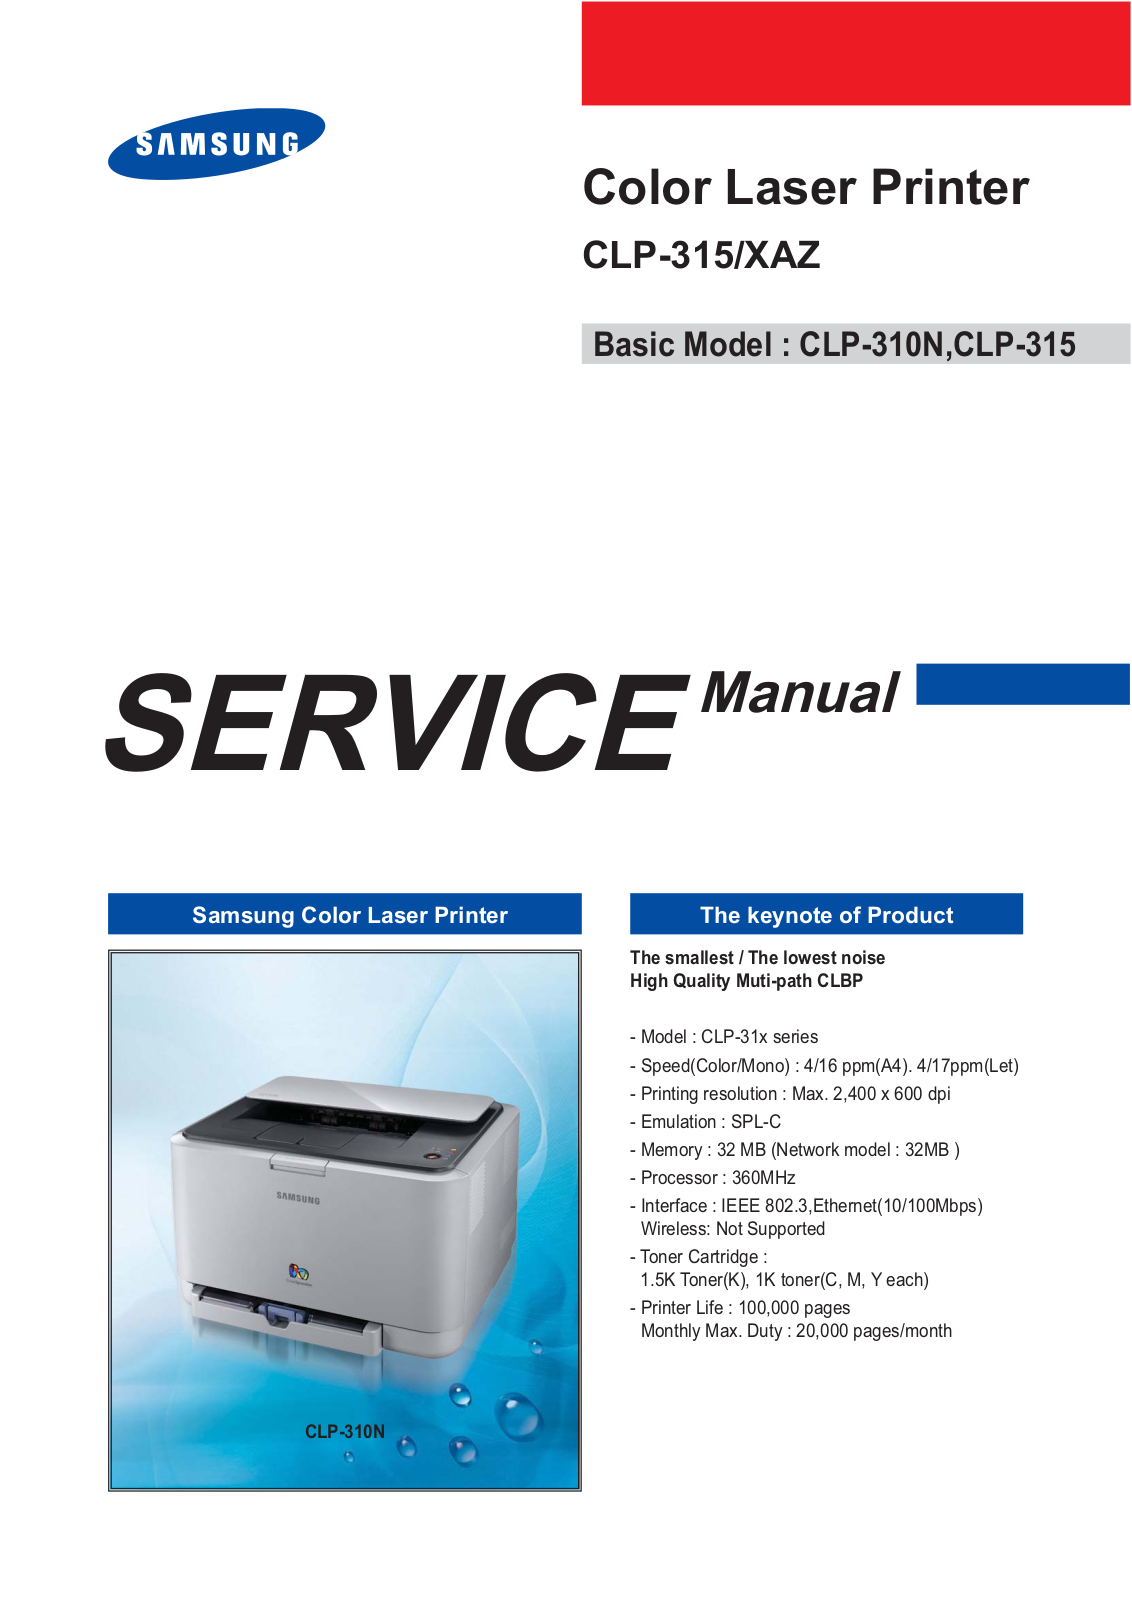 Samsung CLP-310N, CLP-315Z, CLP-315A, CLP-315X Service Manual